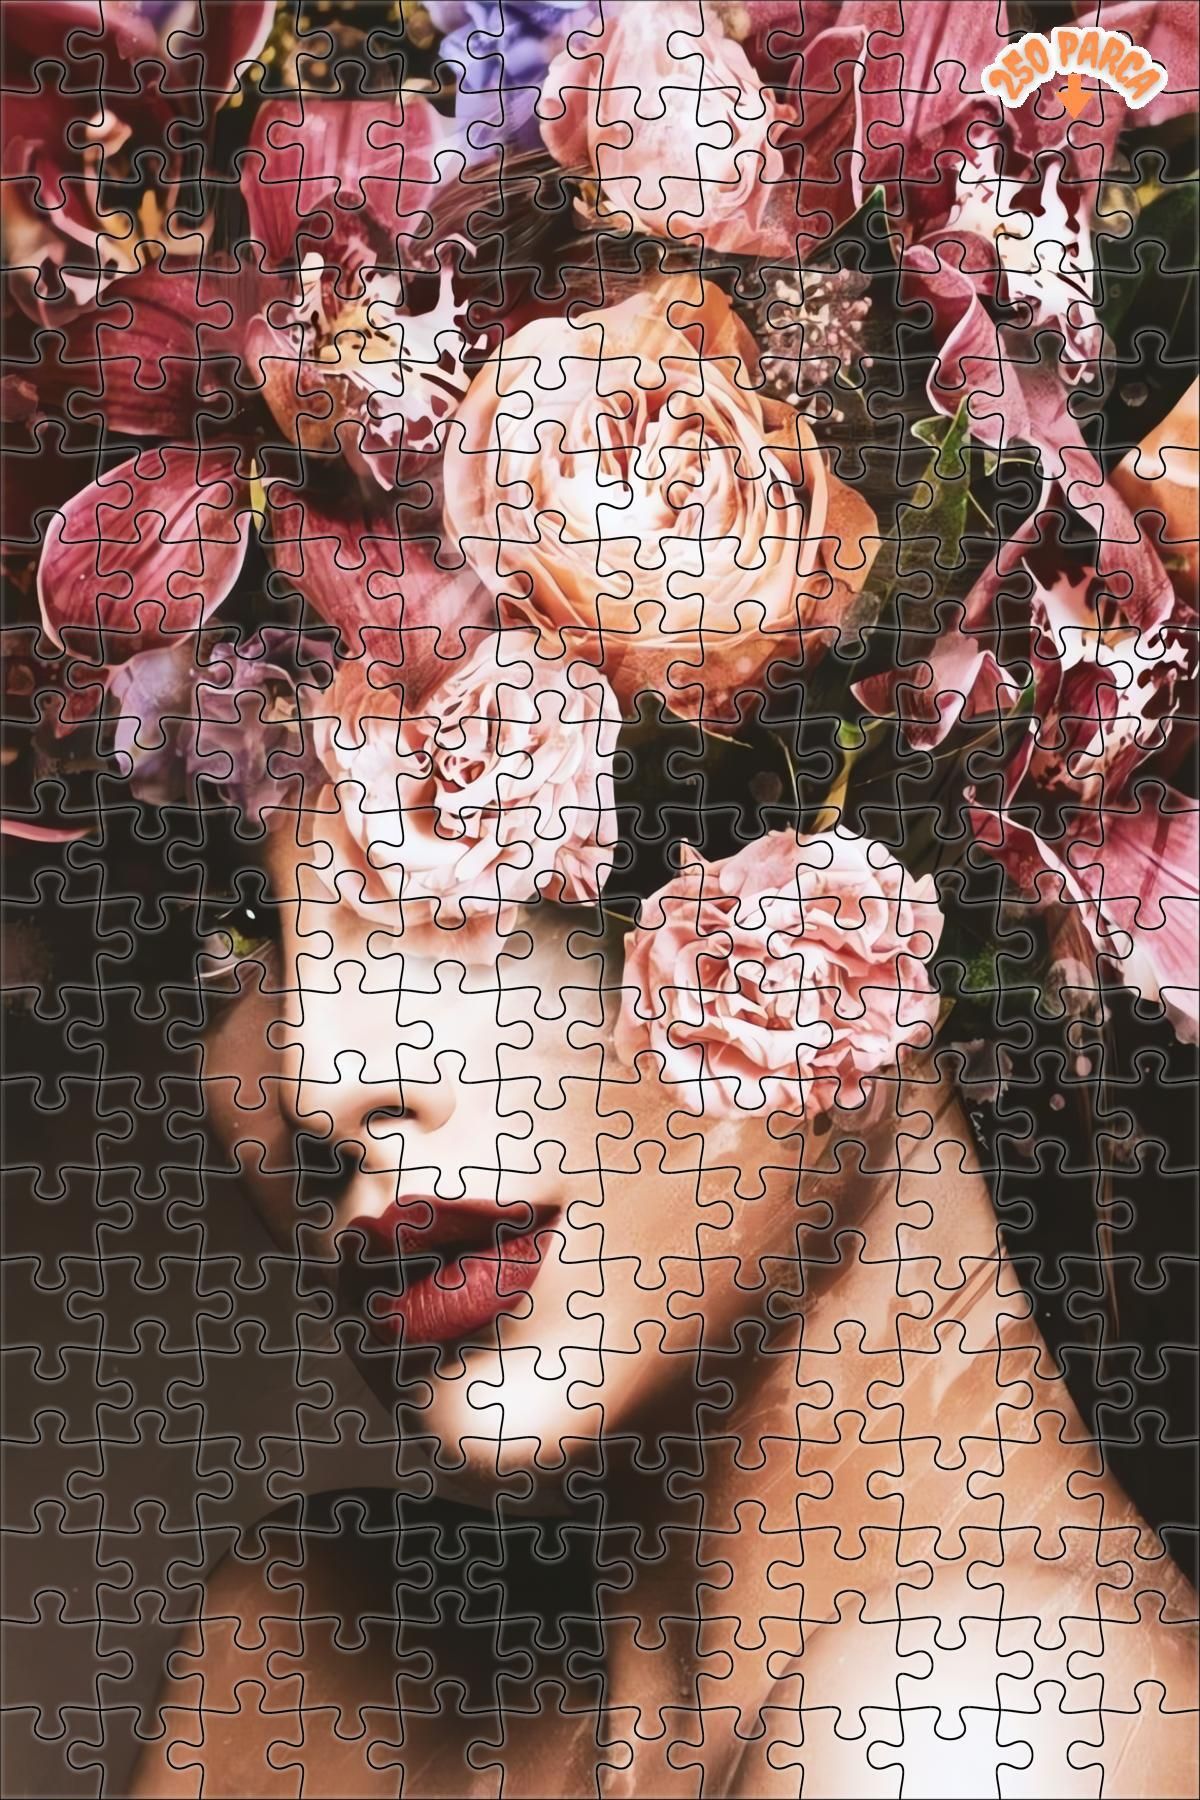 Teona Ahşap Çiçekler Ve Kadın Dekoratif Çift Katlı Çerçeveli Asılabilir Ahşap Puzzle 250 PARÇA 30X30